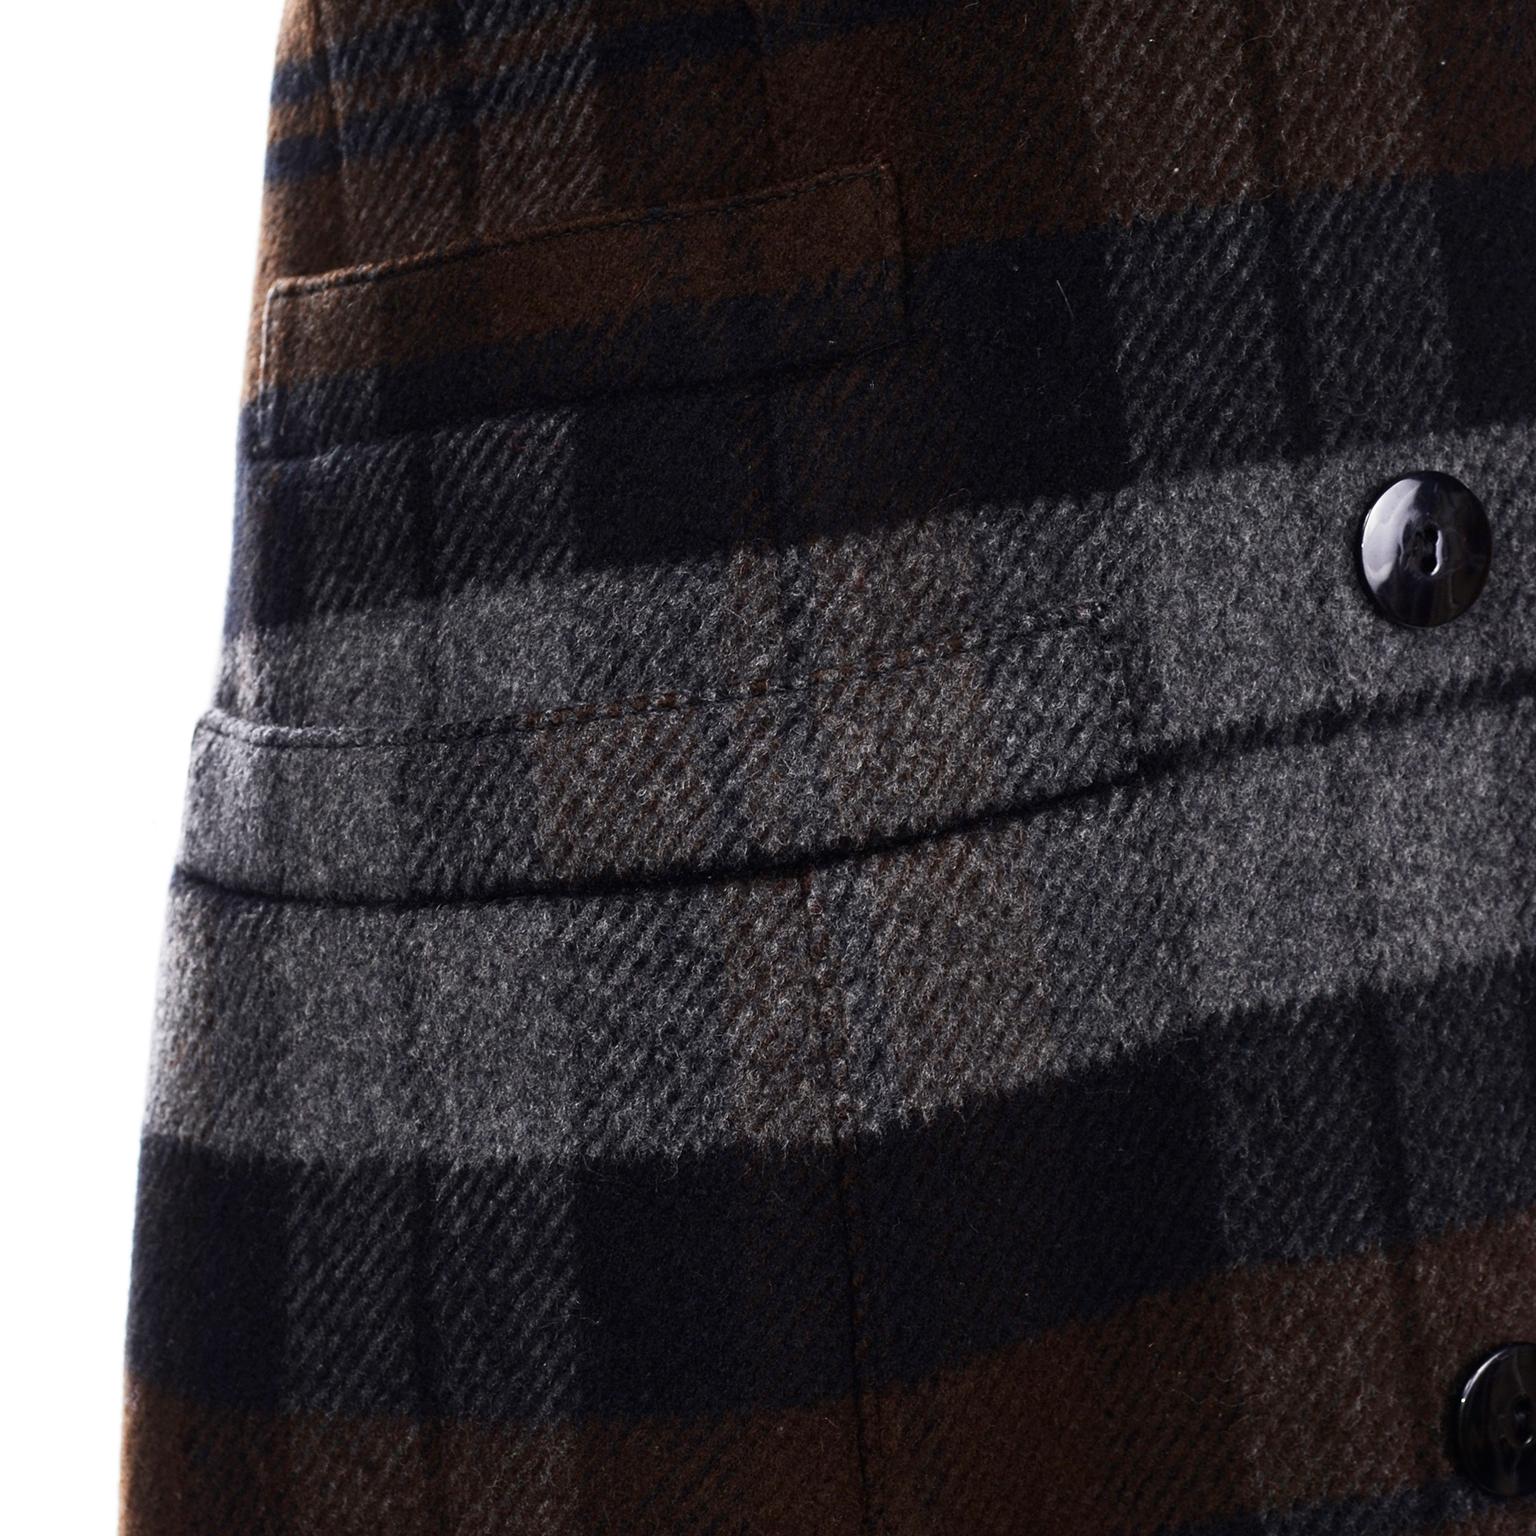 Black Escada Margaretha Ley Plaid Wool Blazer Longline Jacket in Gray & Brown Plaid For Sale